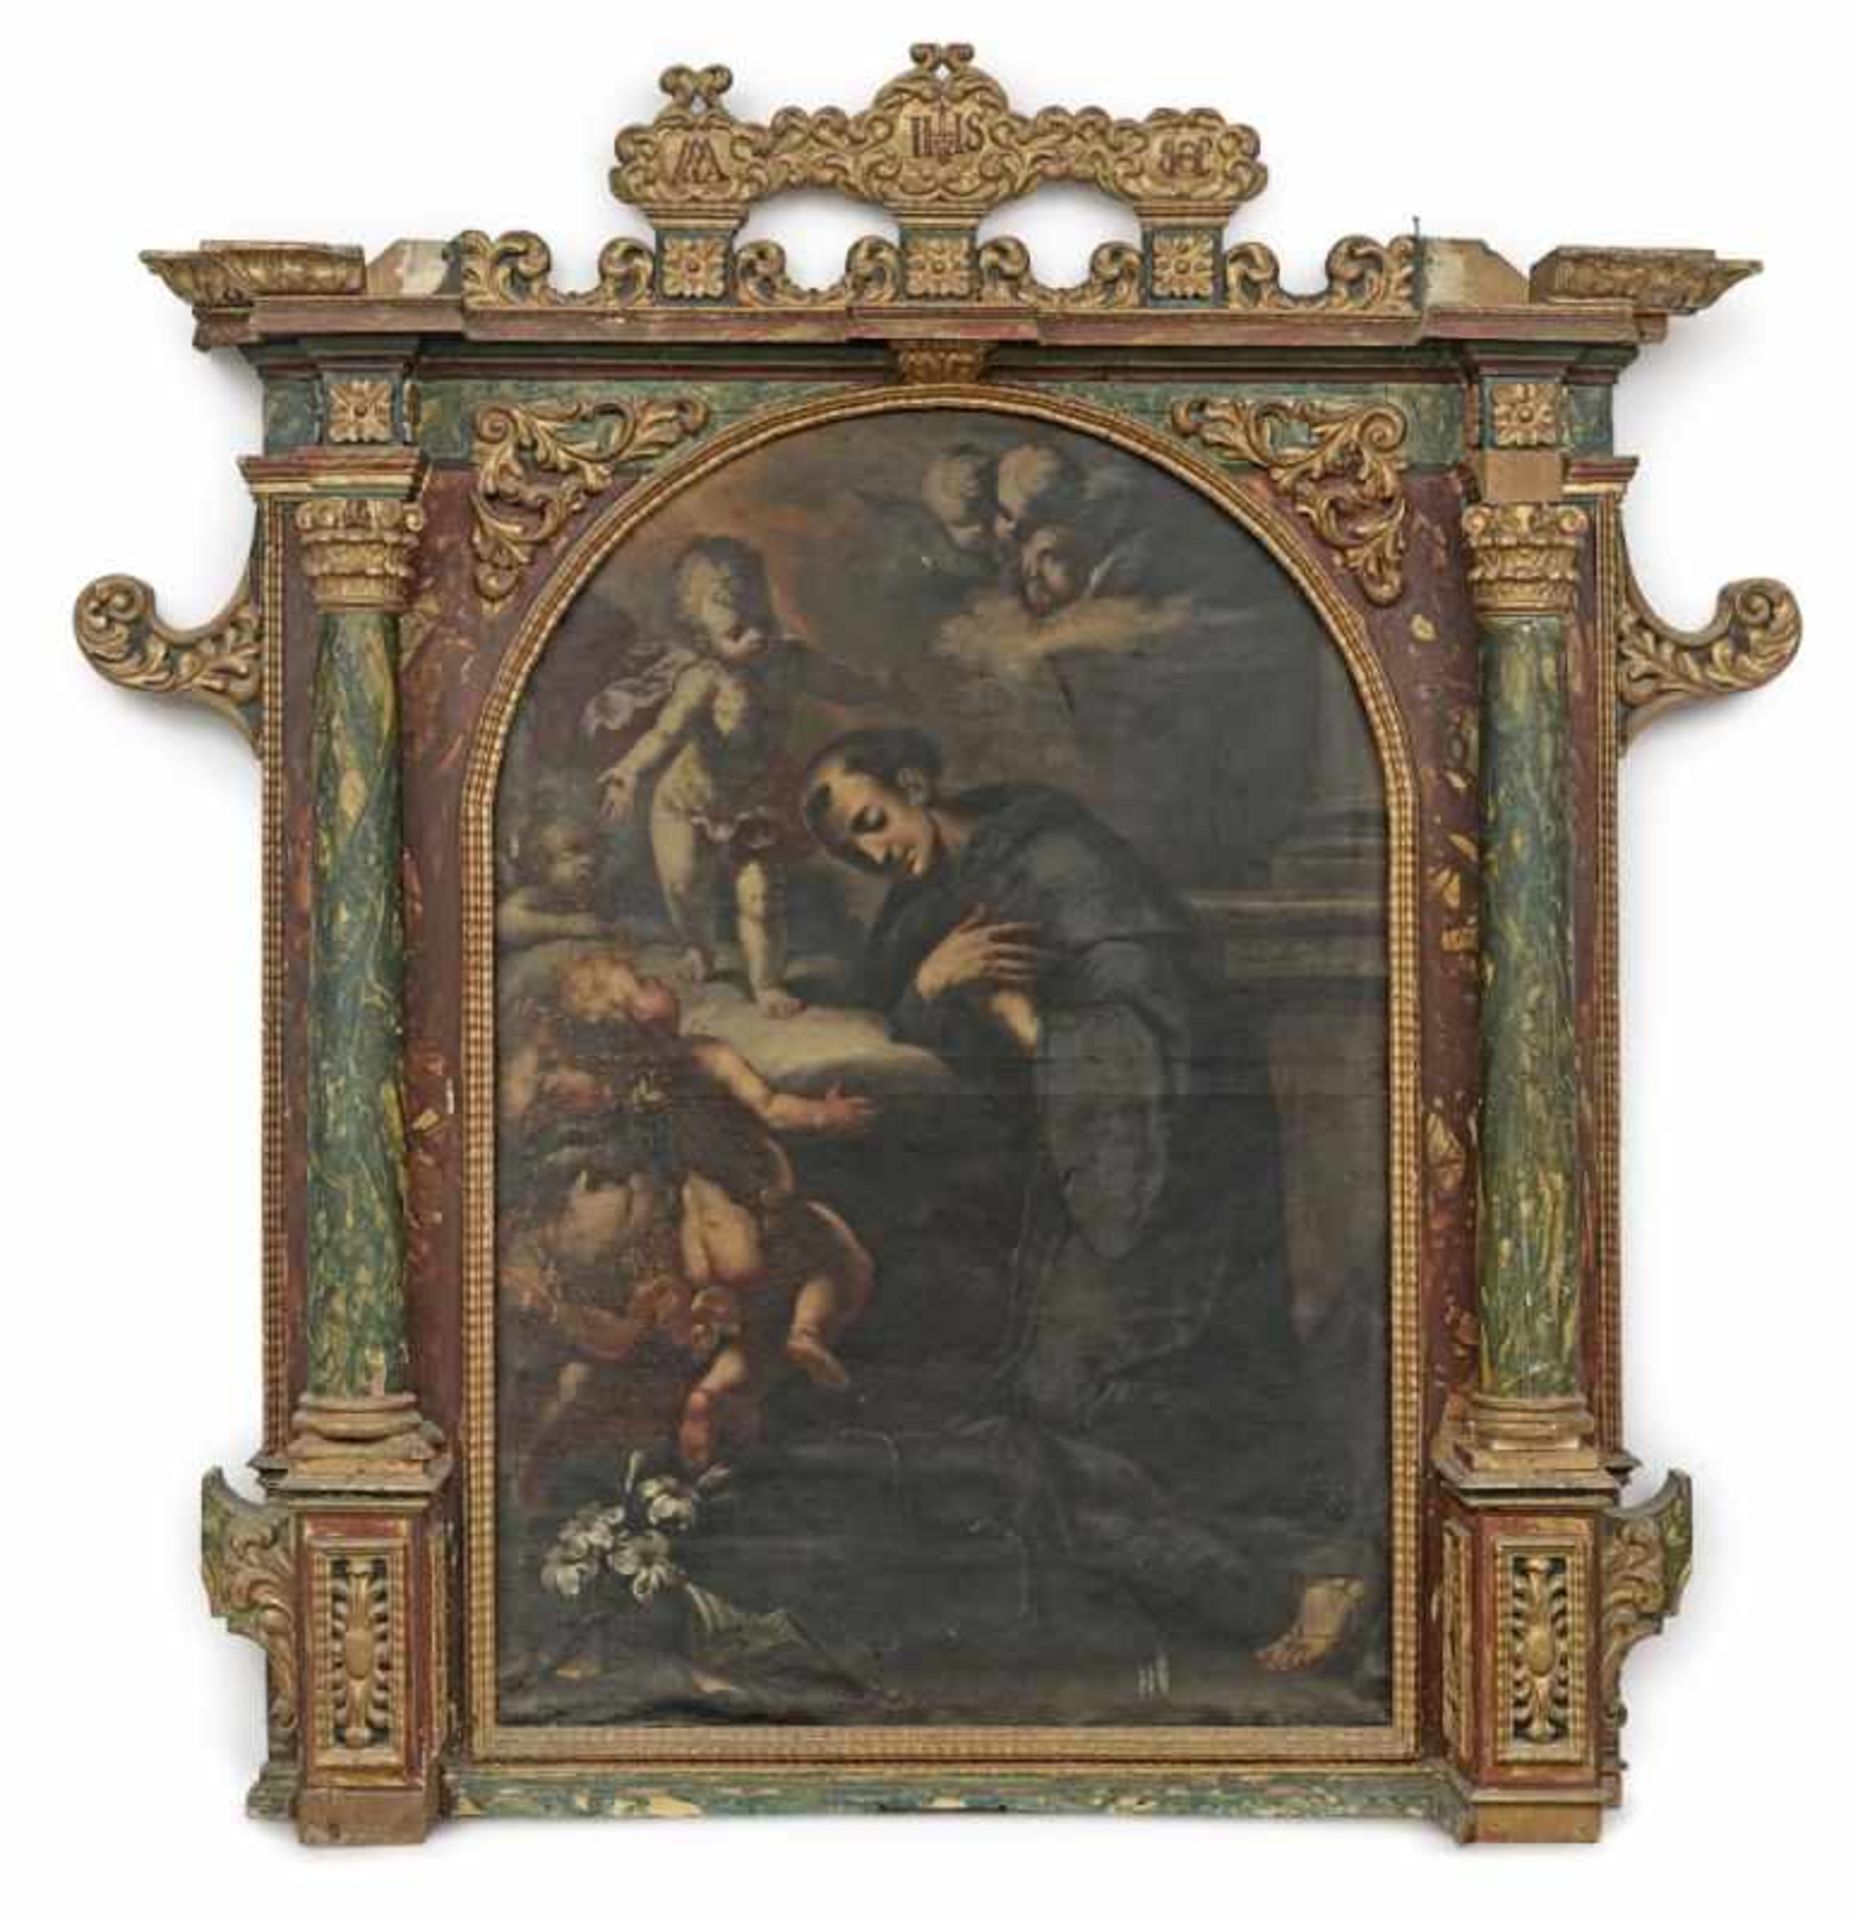 Italien (?)17. Jh. Die Vision des Hl. Antonius von PaduaÖl auf Lwd. 140,5 x 96 cm. Besch. Reich